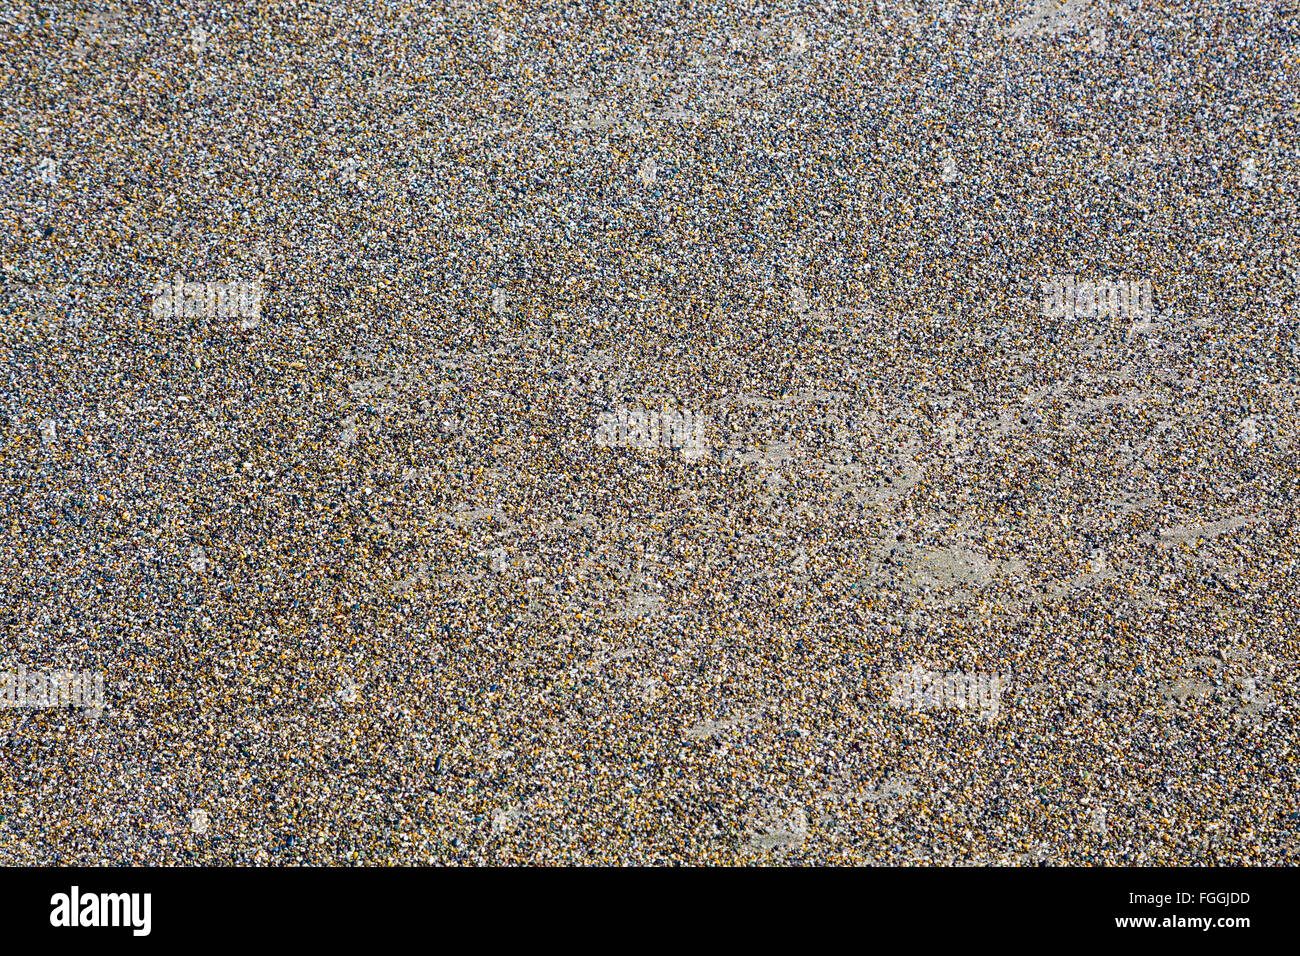 Resumen imagen de textura de la arena en la playa. Foto de stock